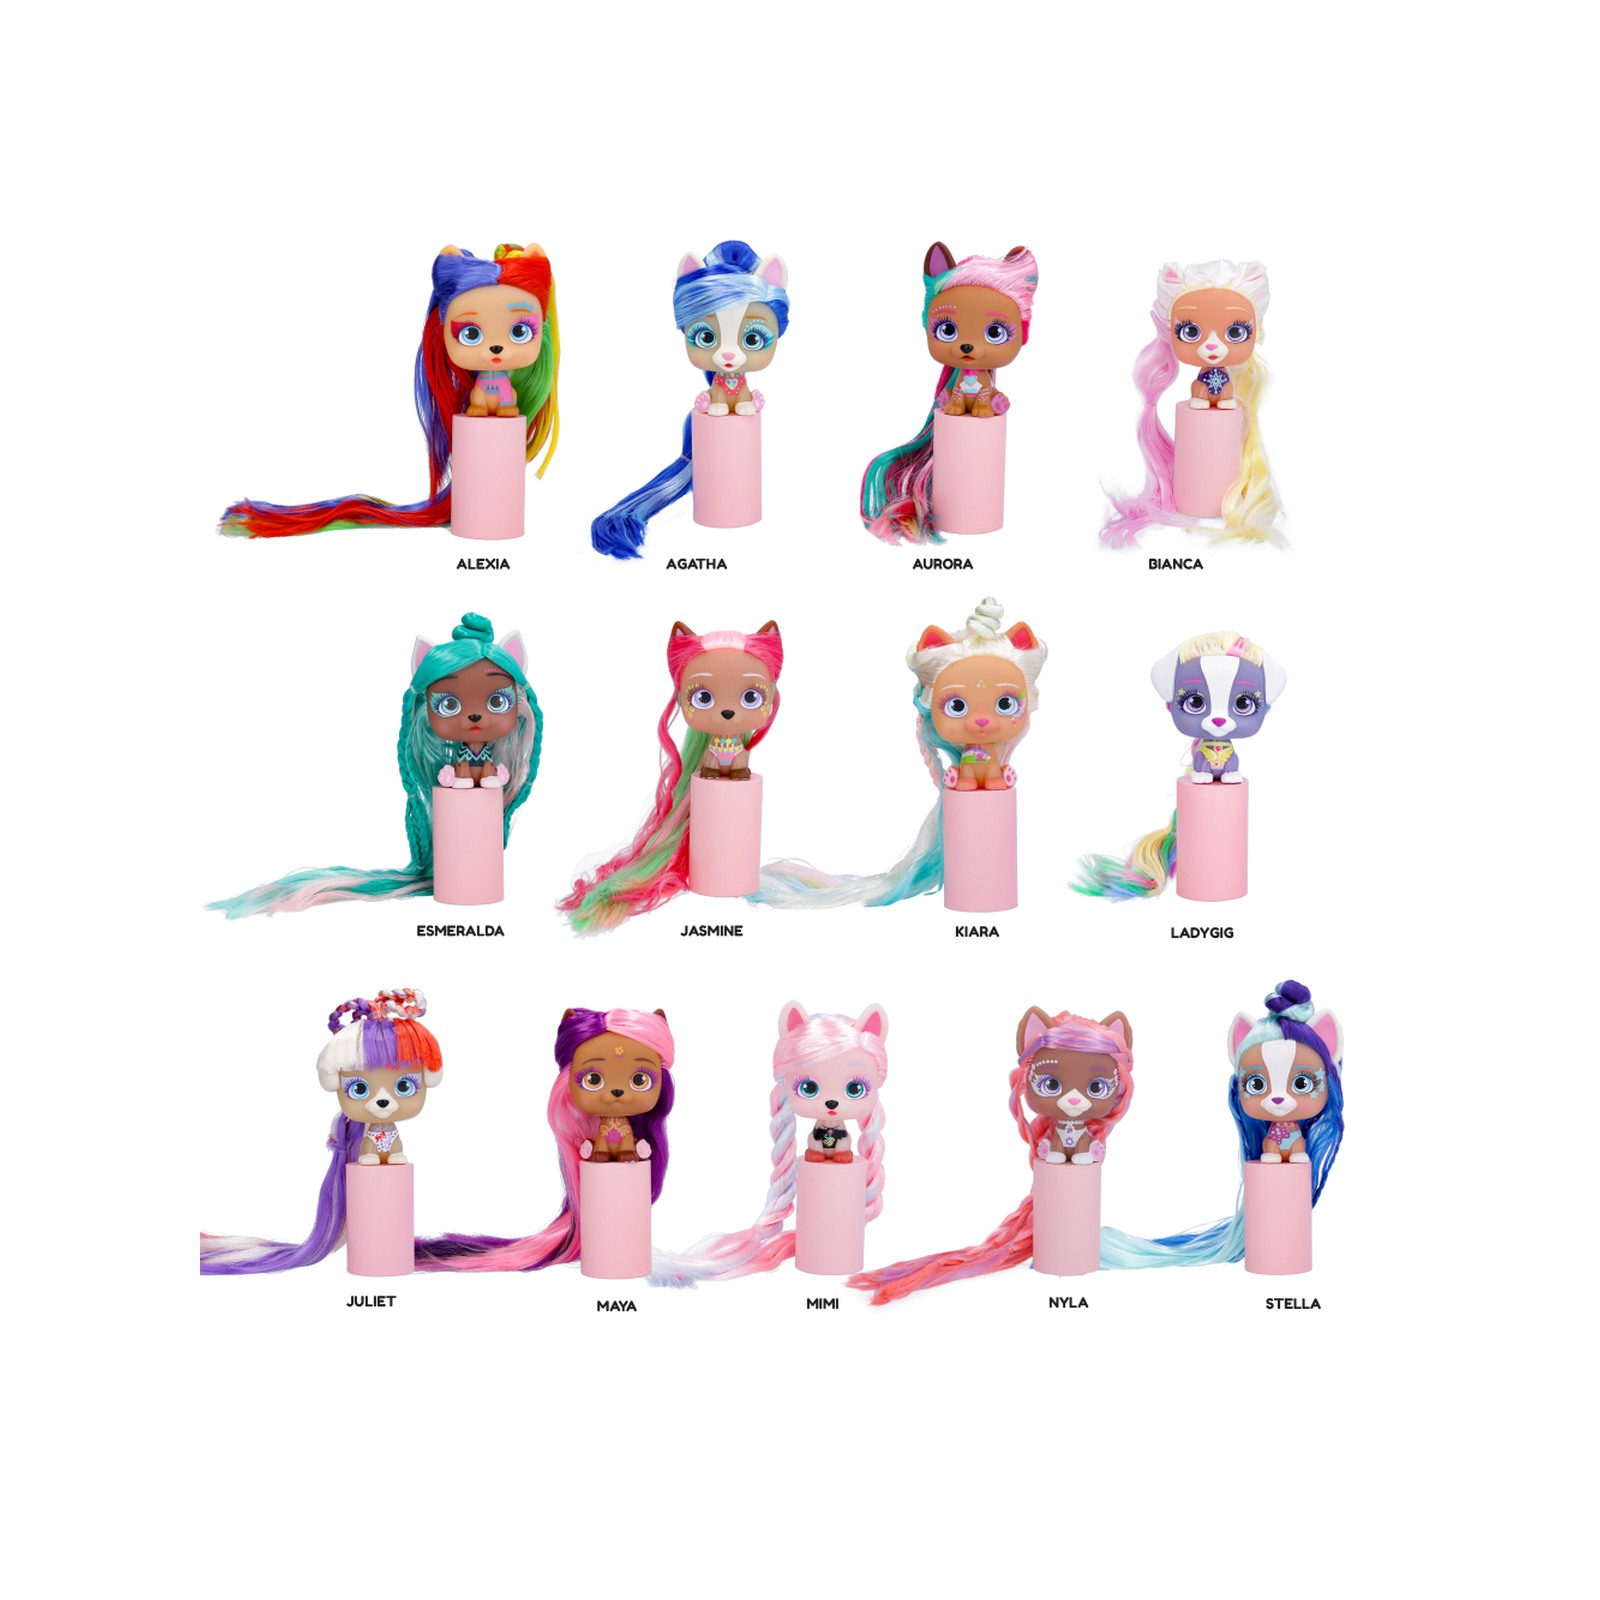 Vip pets glam gems 13 bambole cagnoline con capelli lunghissimi e accessori per acconciare; ideali per  bambini e bambini tra i 4 e gli 8 anni - VIP PETS